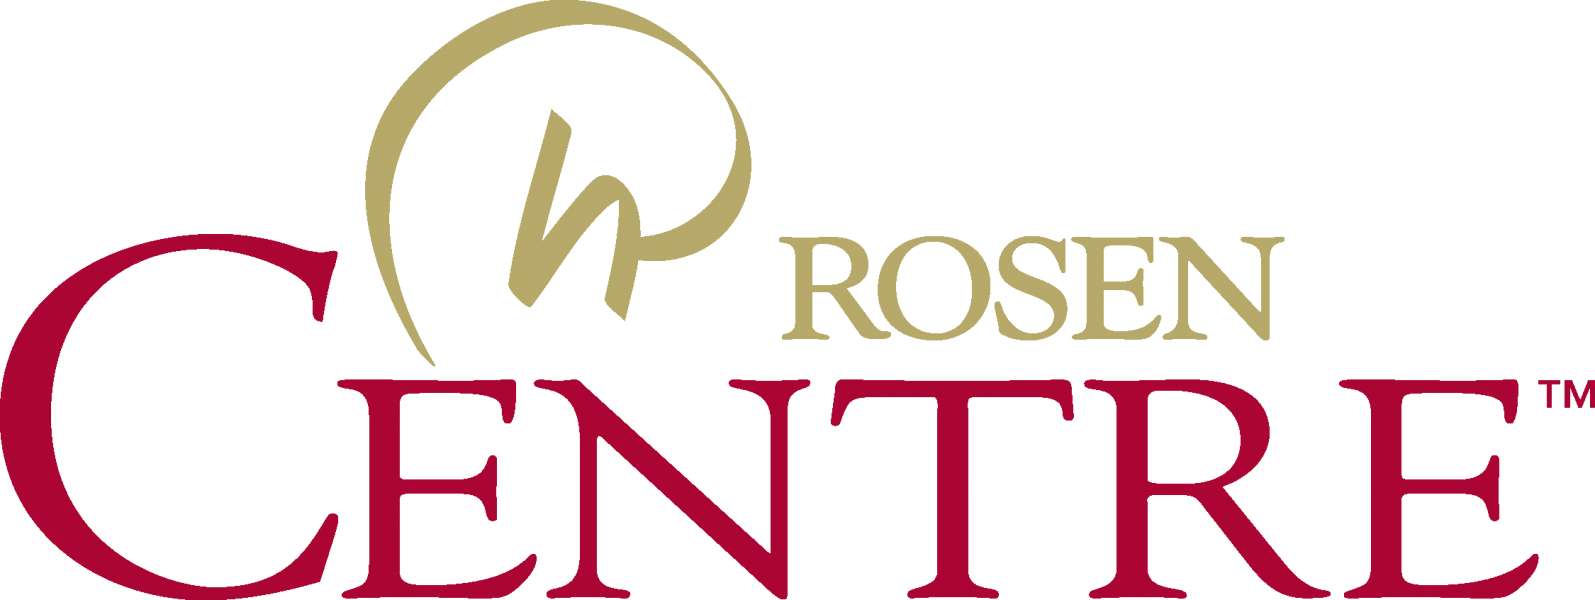 Rosen Logo - Logos | Rosen Hotels & Resorts